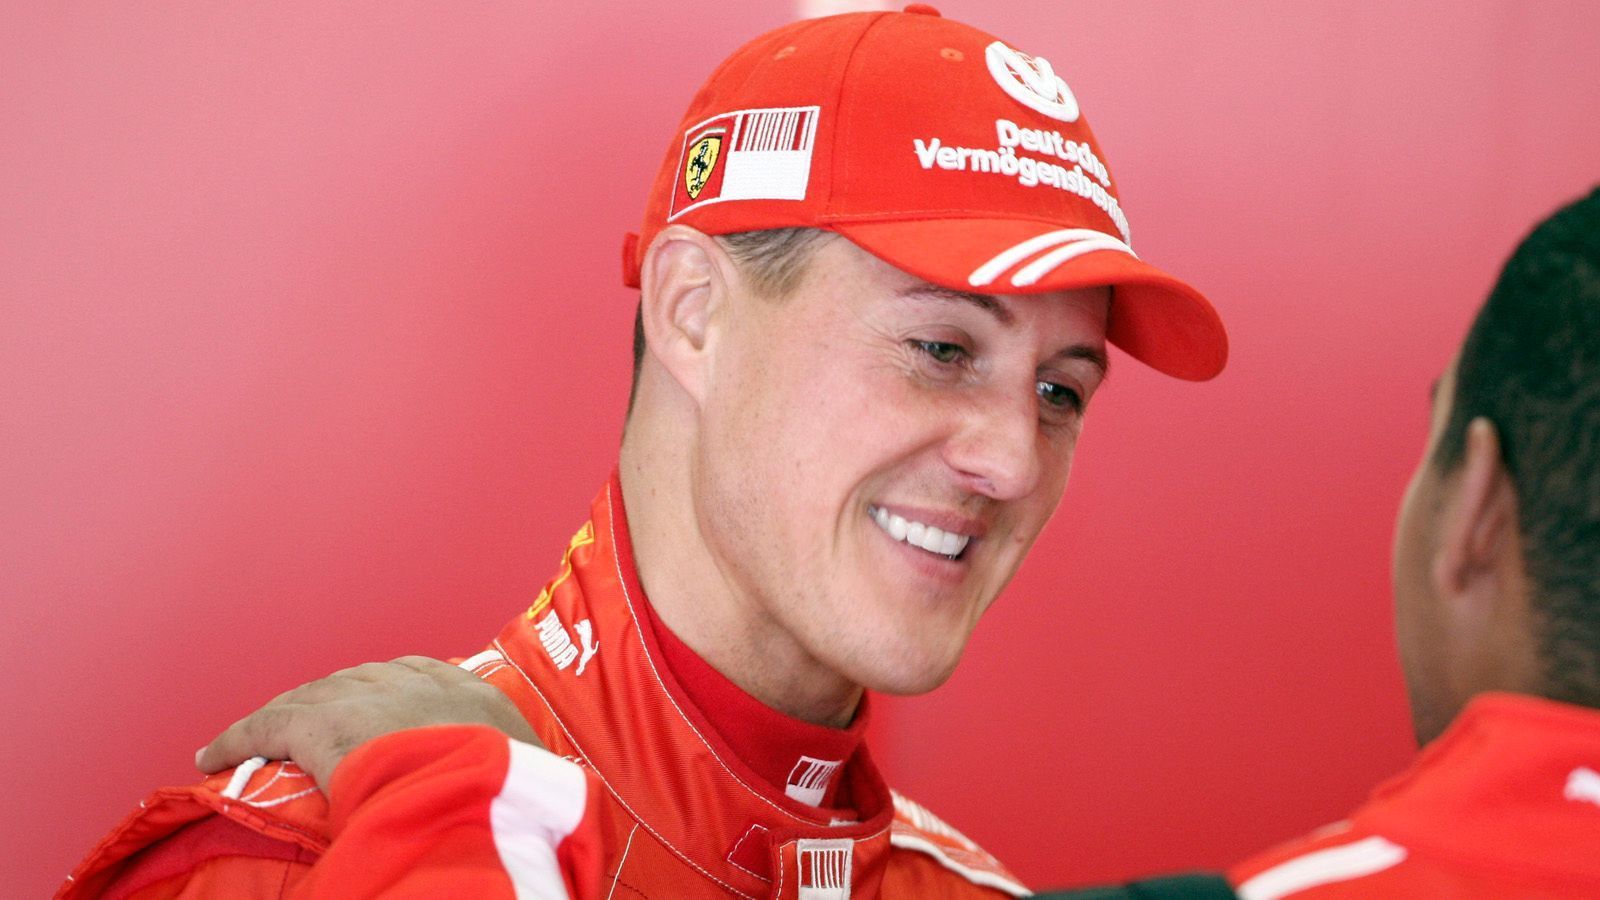 
                <strong>Die meisten schnellsten Rennrunden</strong><br>
                Michael Schumacher (77)
              